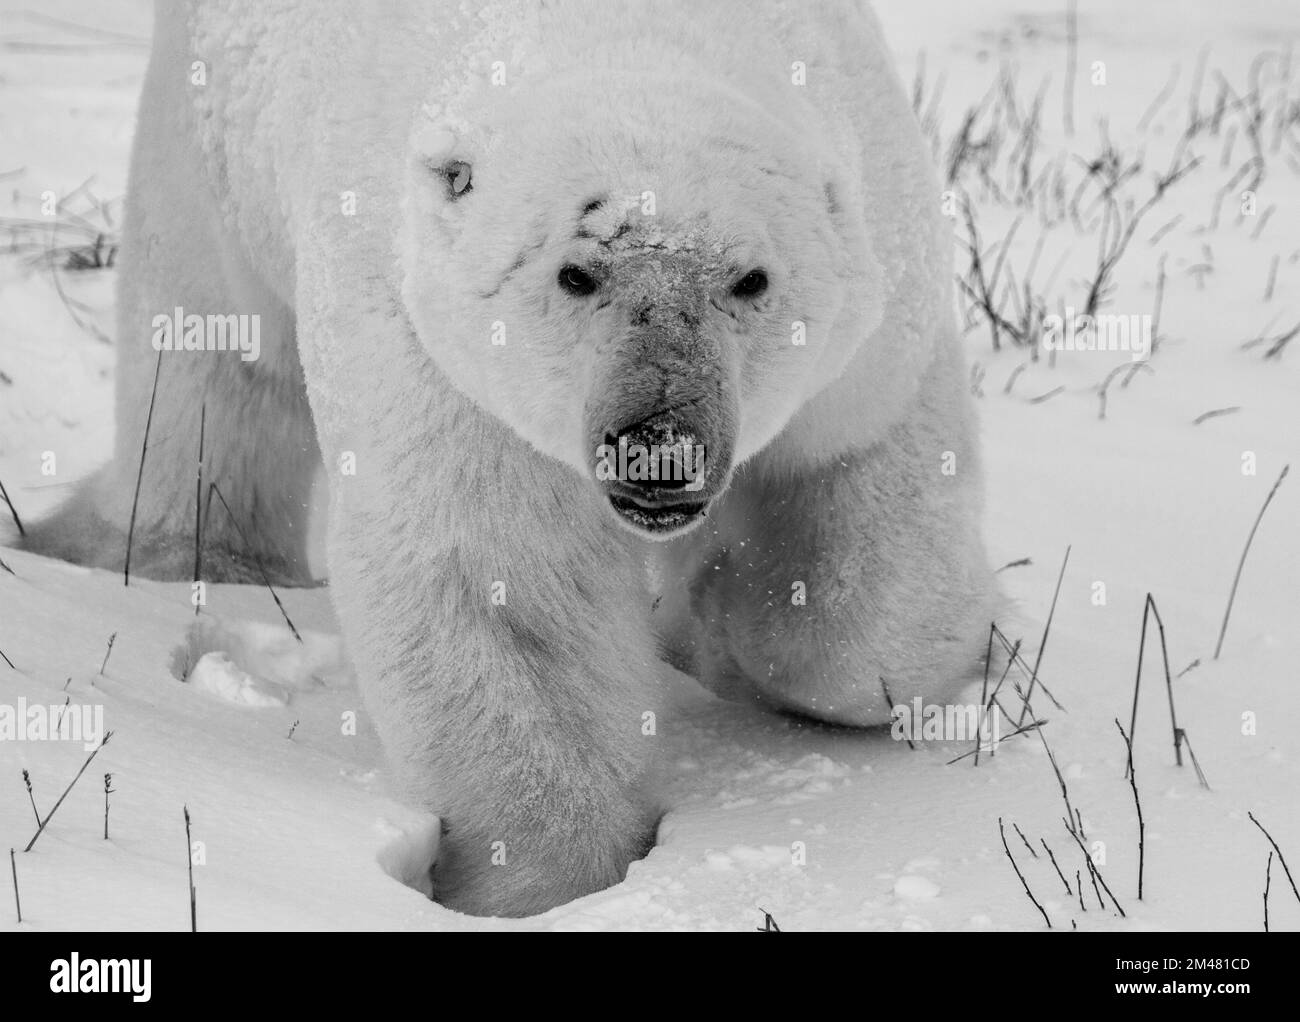 Nahaufnahme eines Eisbären oder Usus maritumus in Schwarz und Weiß mit Schnee im Hintergrund, nahe Churchill, Manitoba Kanada Stockfoto